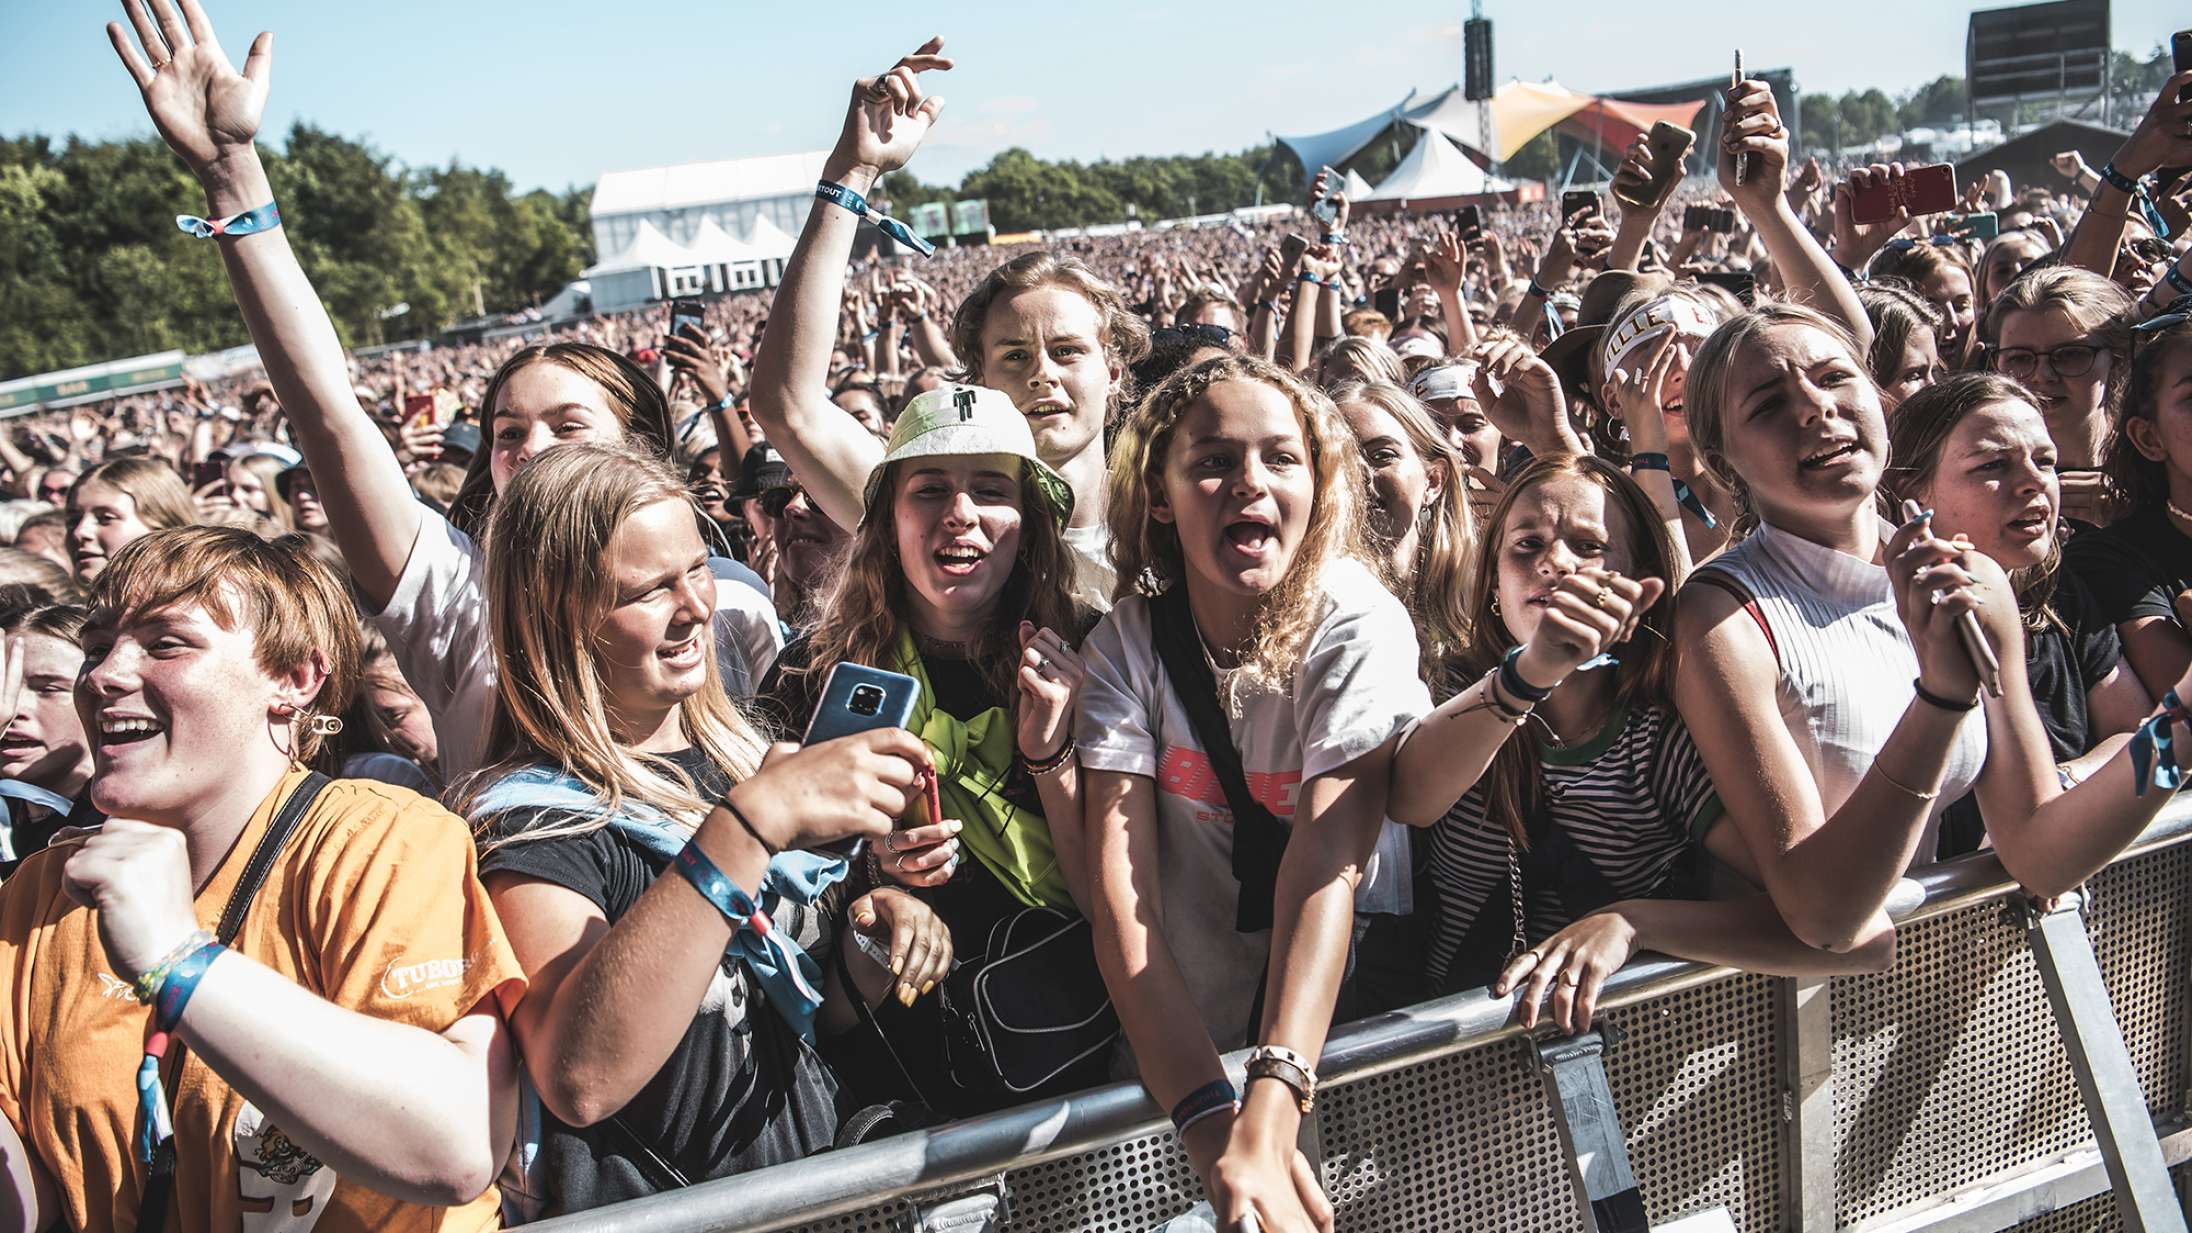 Ekspertgruppen har talt: Sommerens store festivaler som Roskilde Festival og Northside kan ikke afholdes som normalt